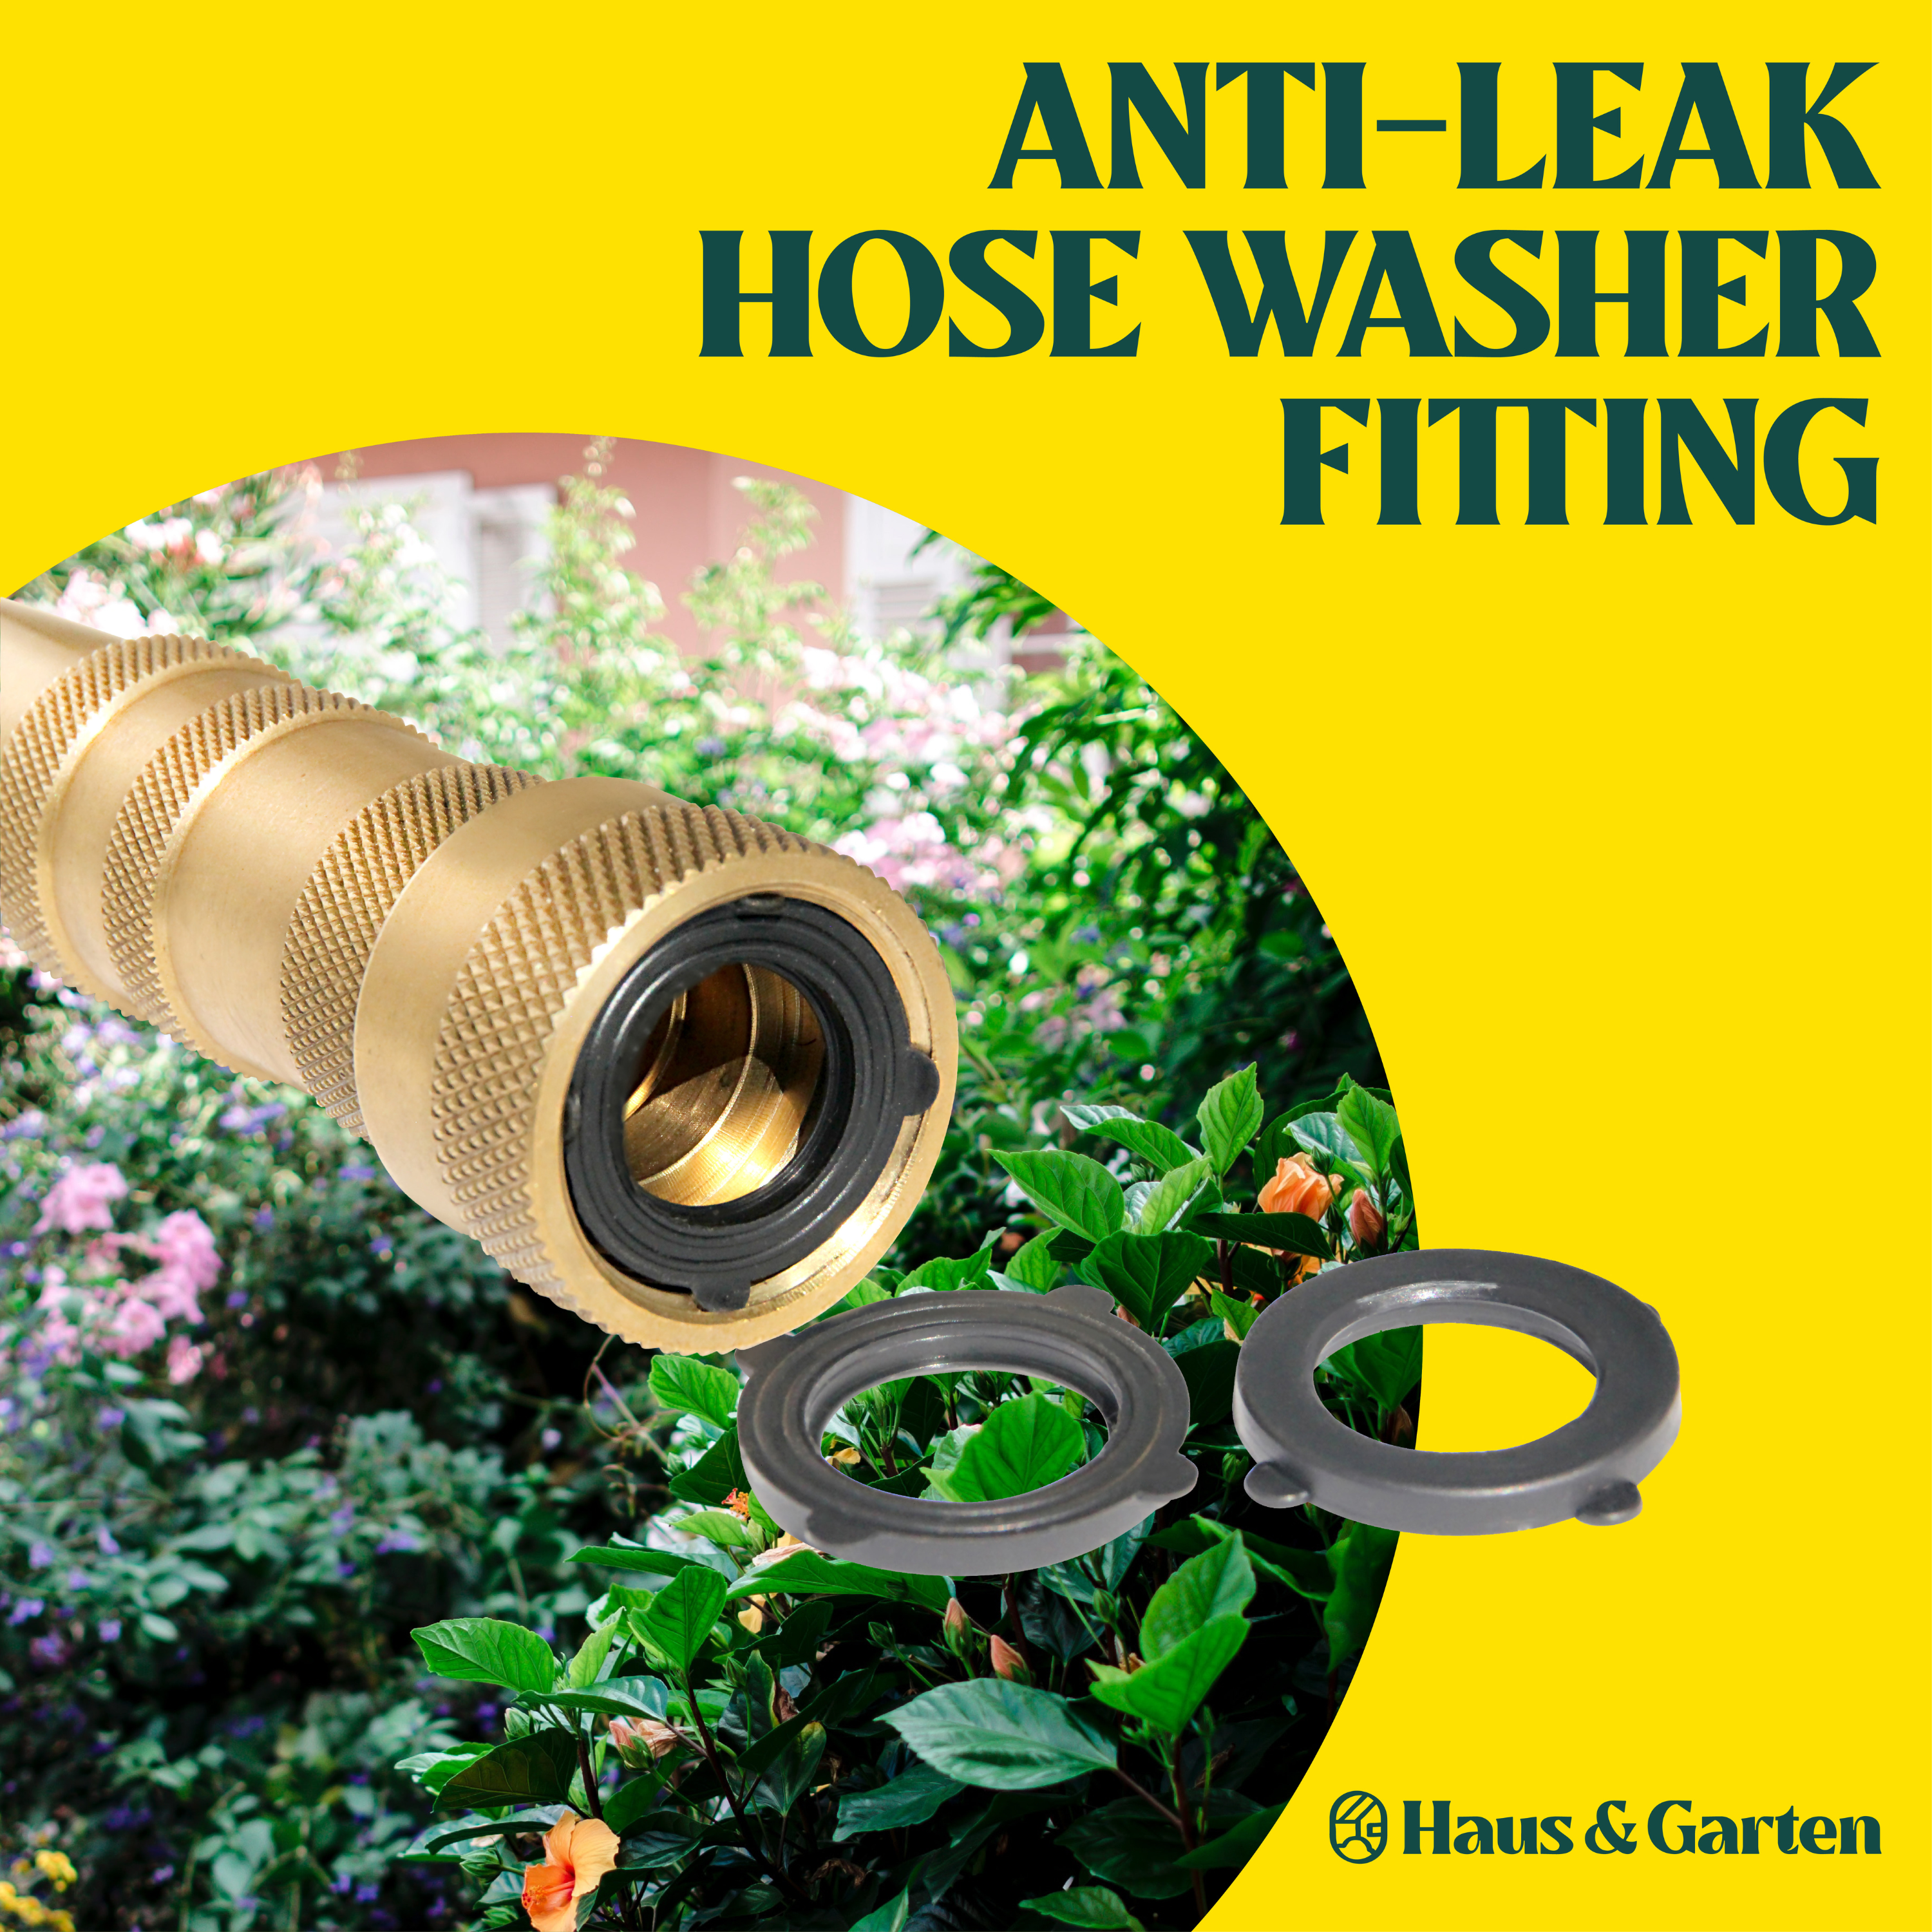 Garden Pride hose connector set - 3 piece - for garden hoses